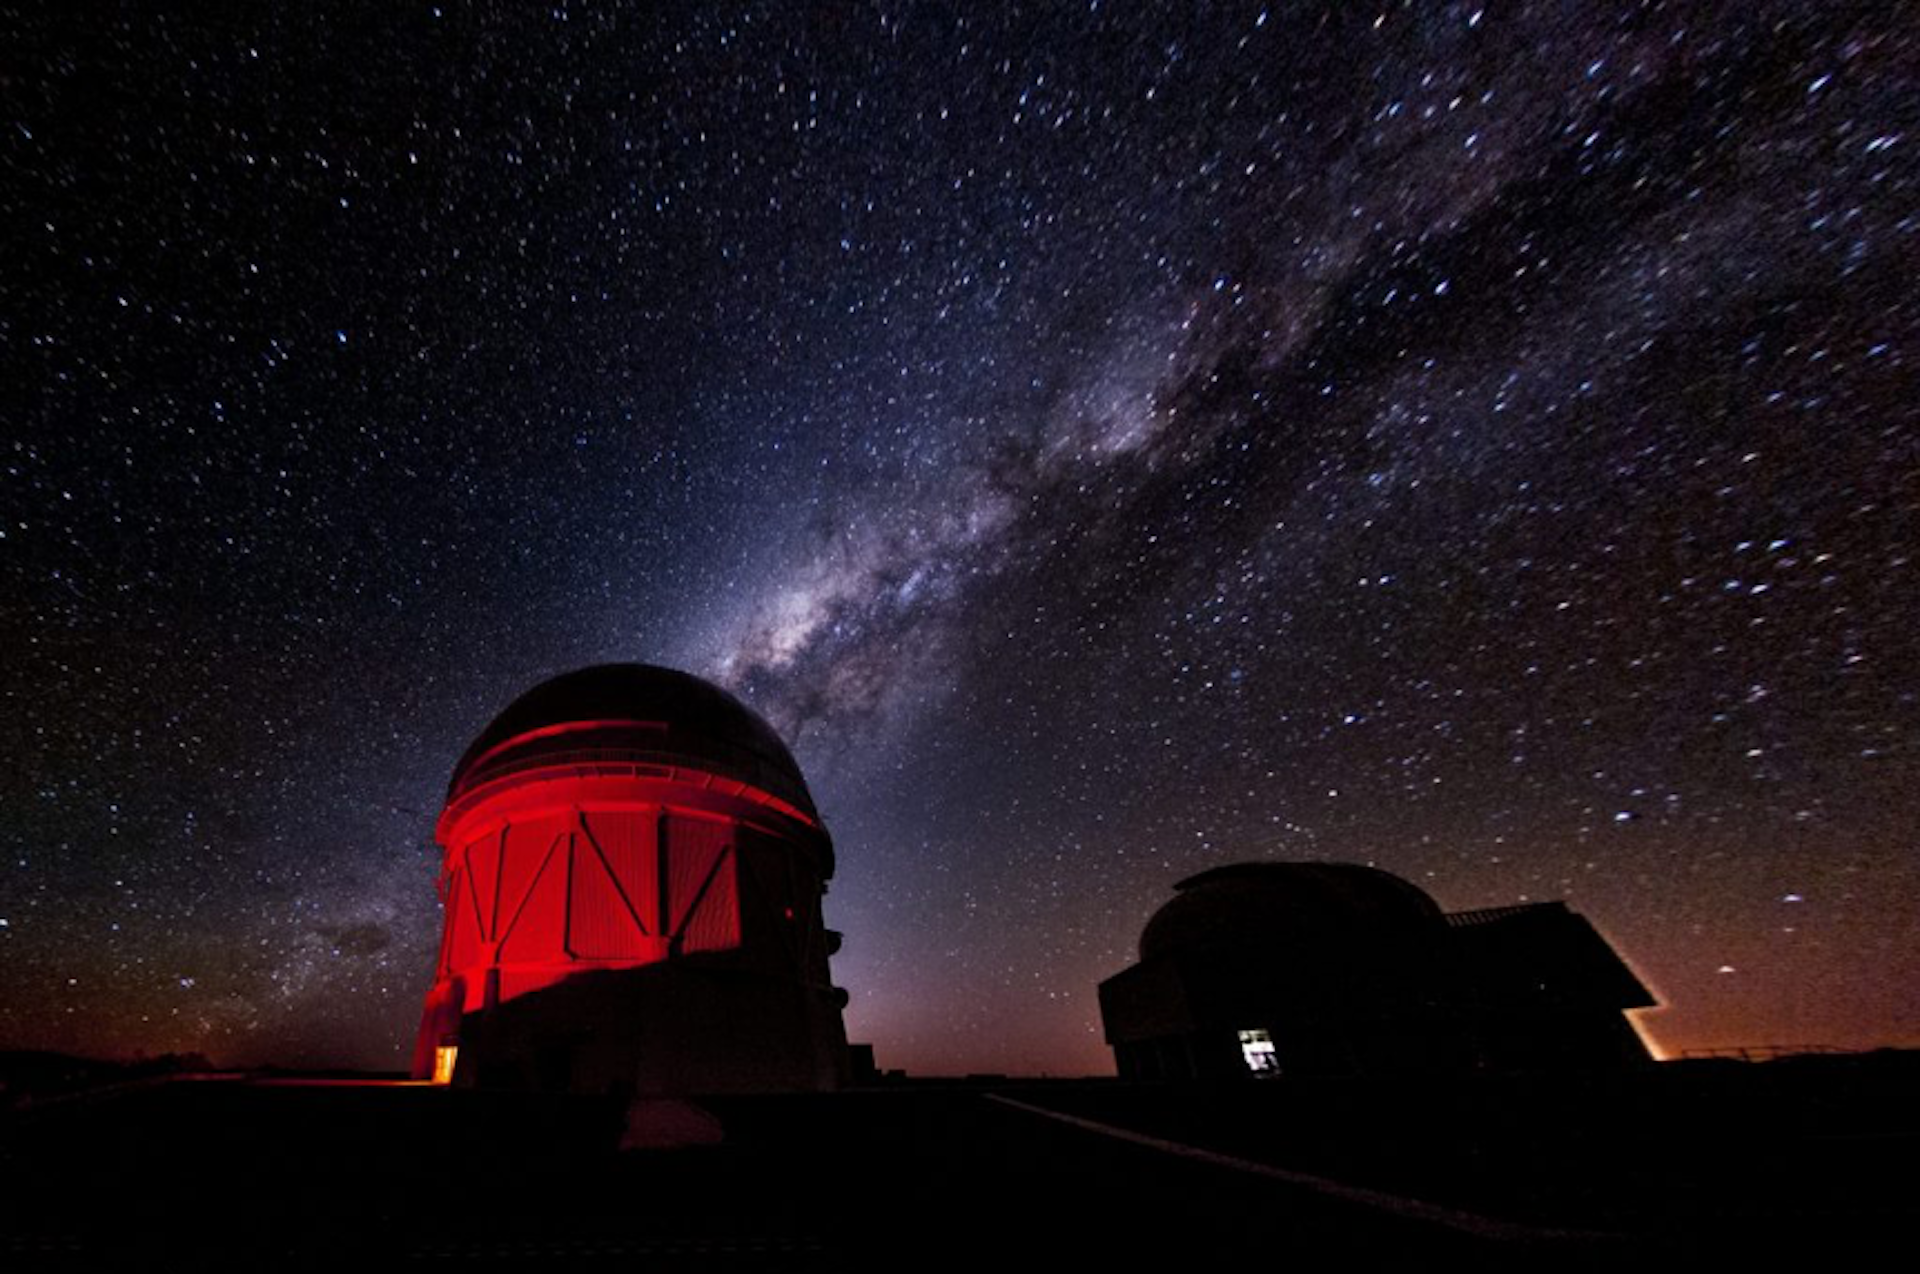 O fotografie a unei clădiri de observator cu lumină roșie, cu cerul înstelat în fundal.